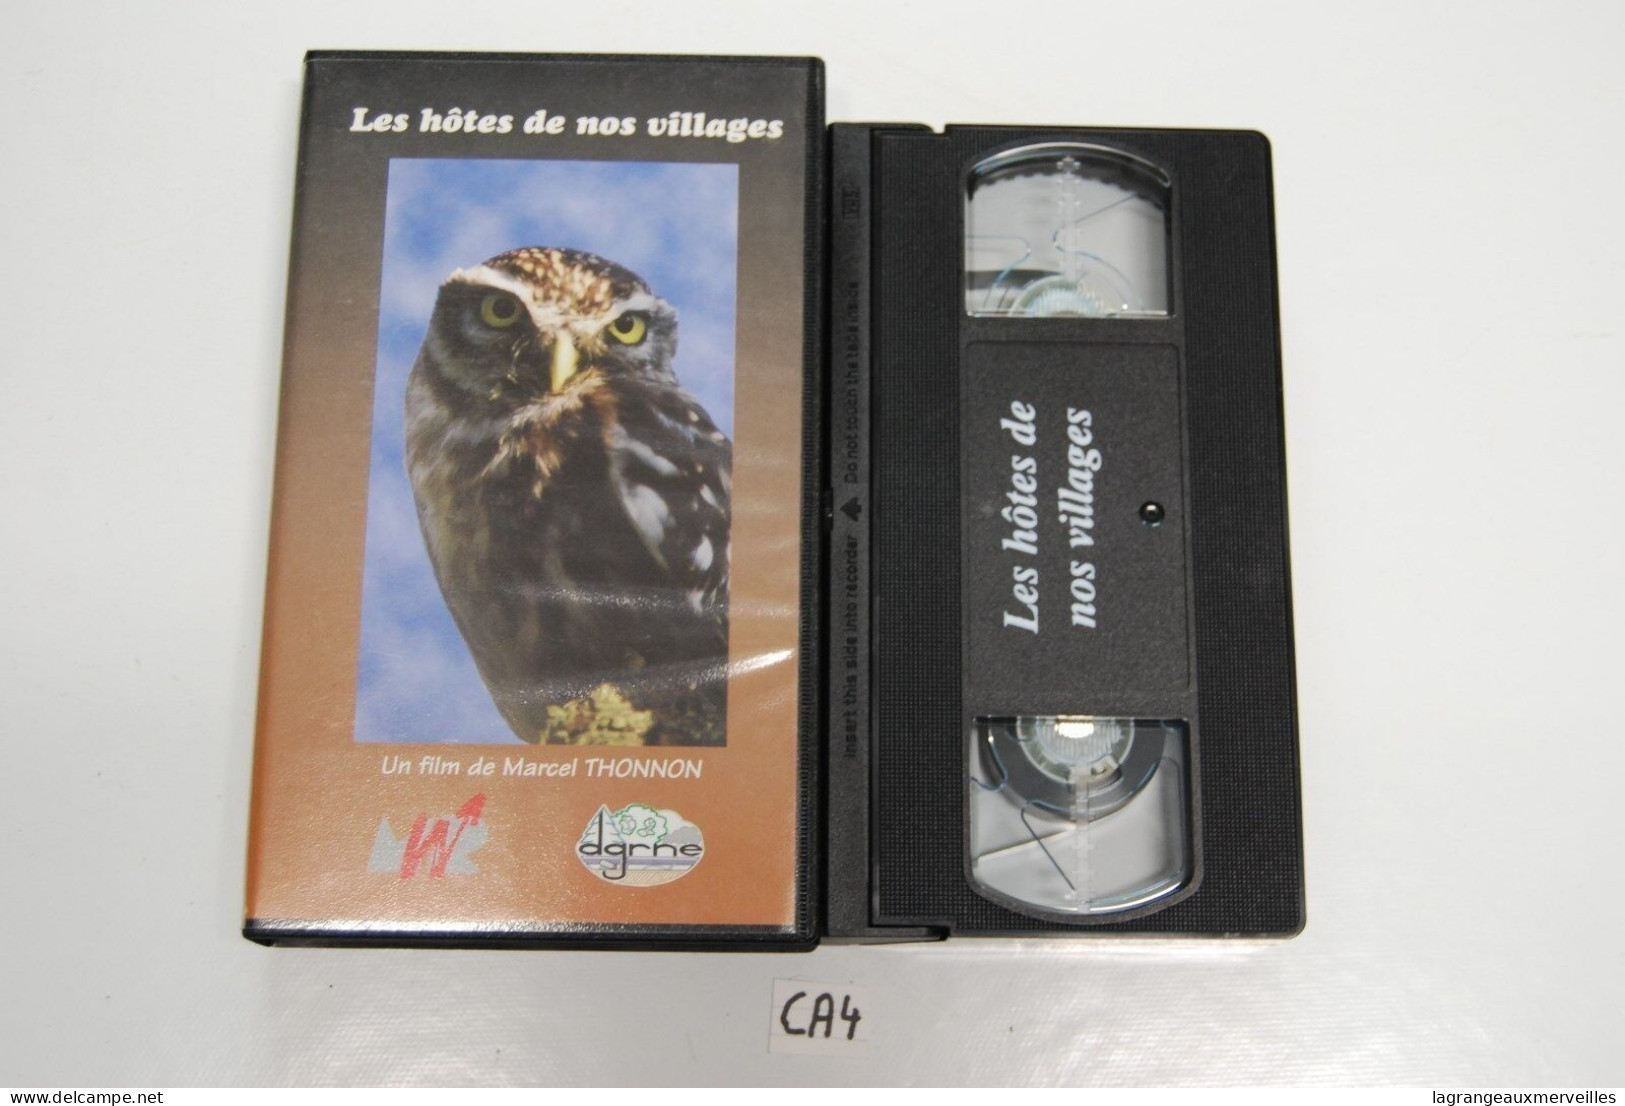 CA4 CASSETTE VIDEO VHS LES HOTES DE NOS VILLAGES - Documentary